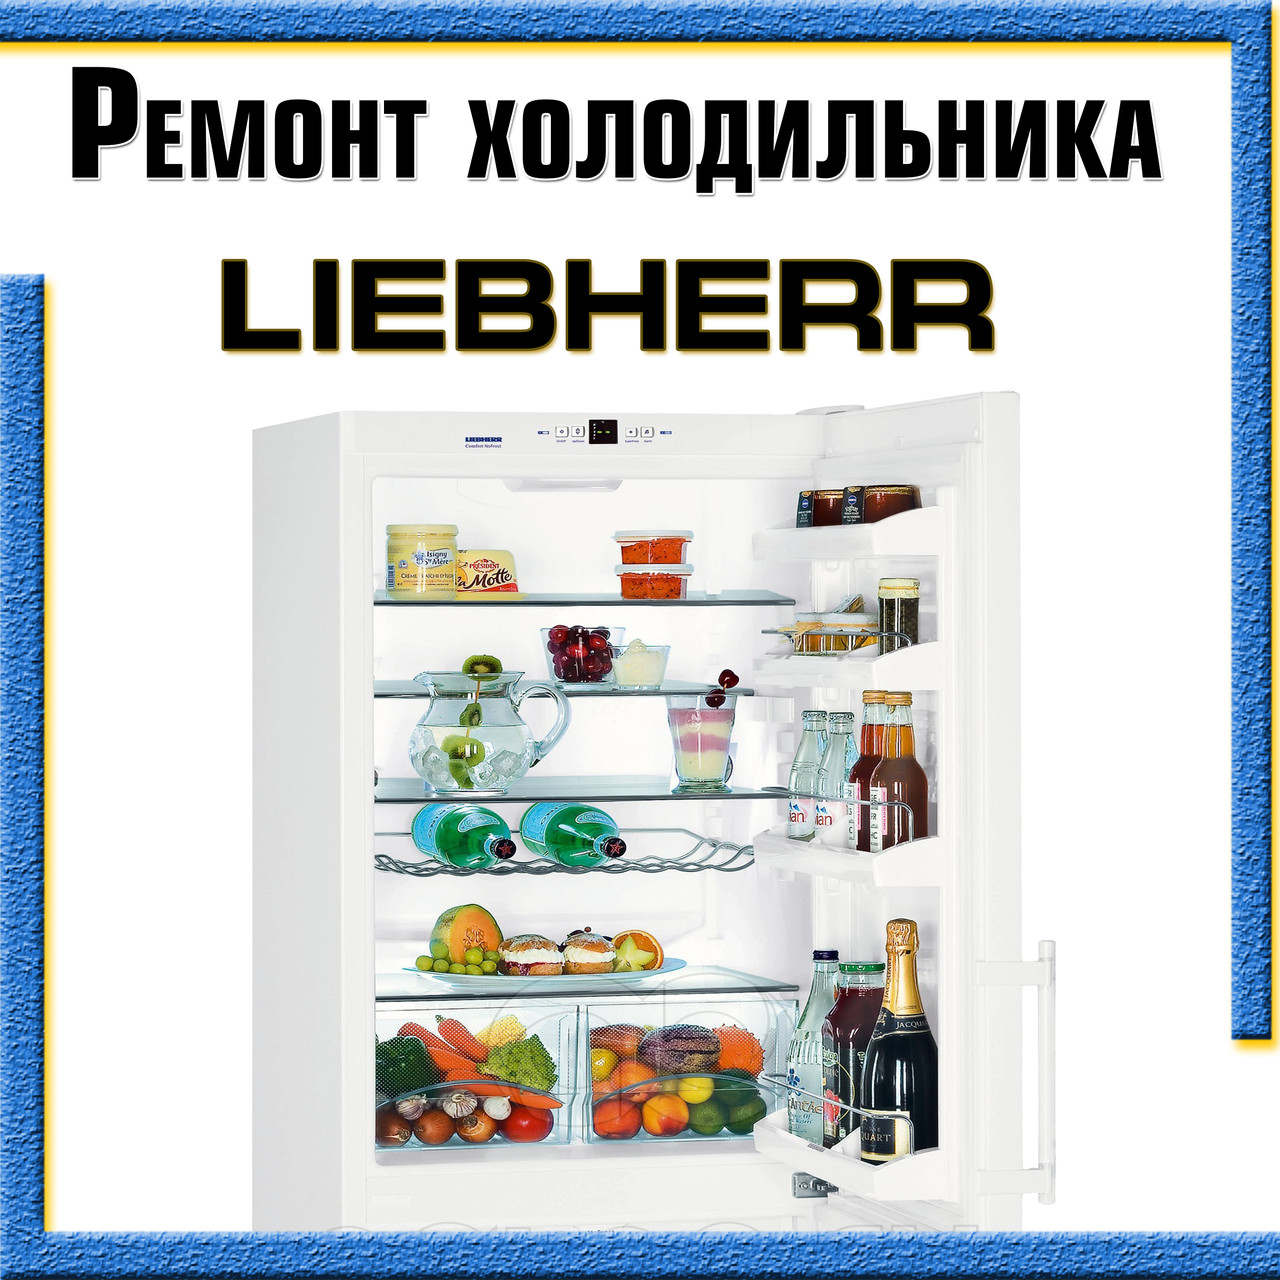 Если у вас сломался холодильник Liebherr